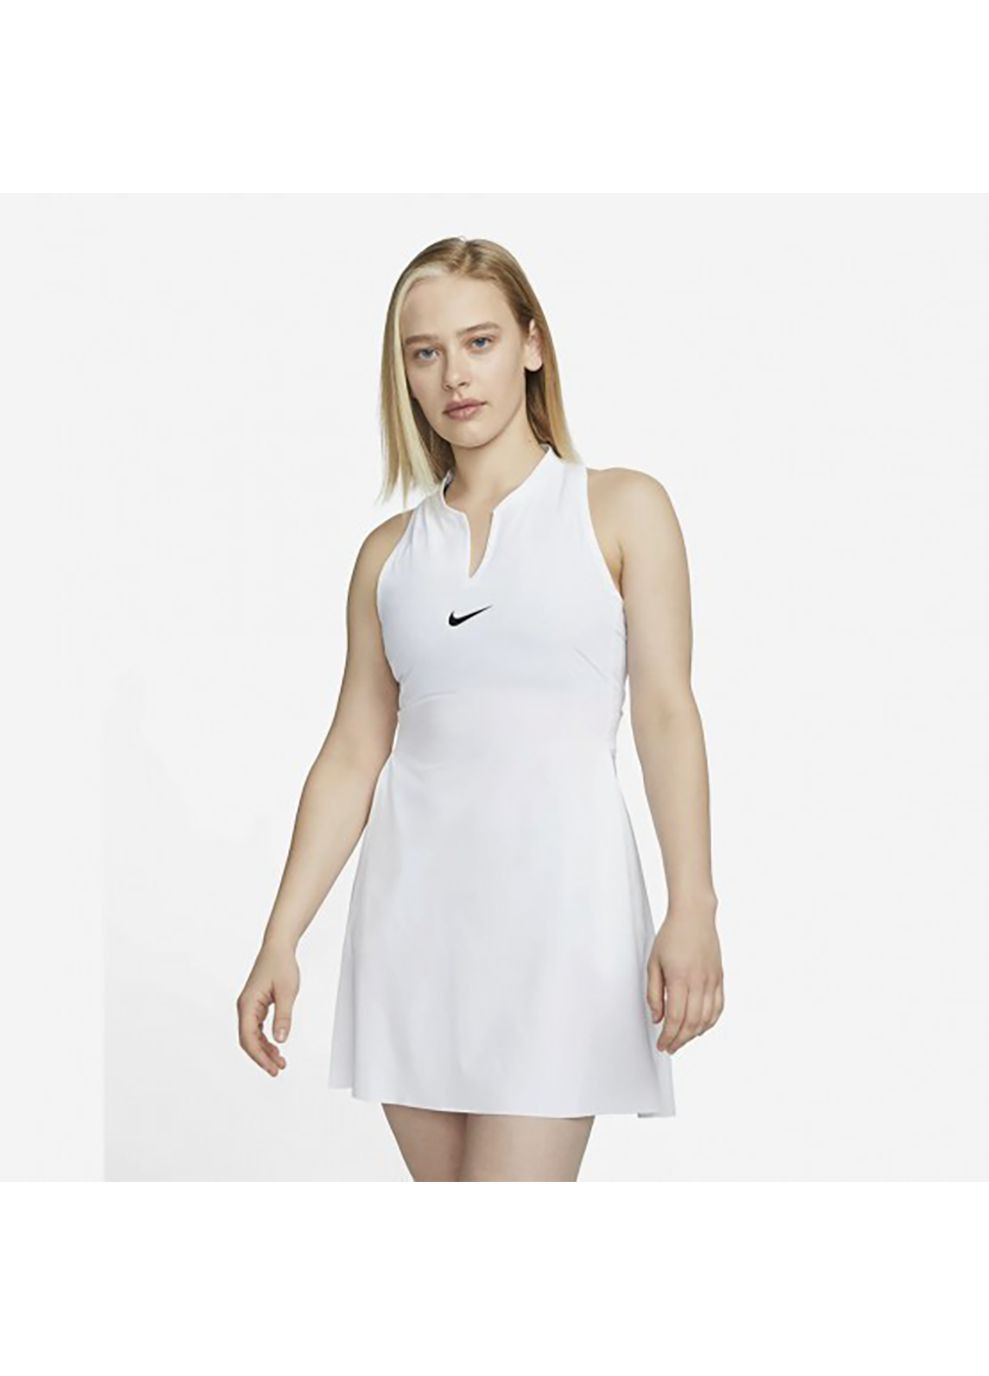 Белое спортивное женское платье df advtg dress белый Nike однотонное